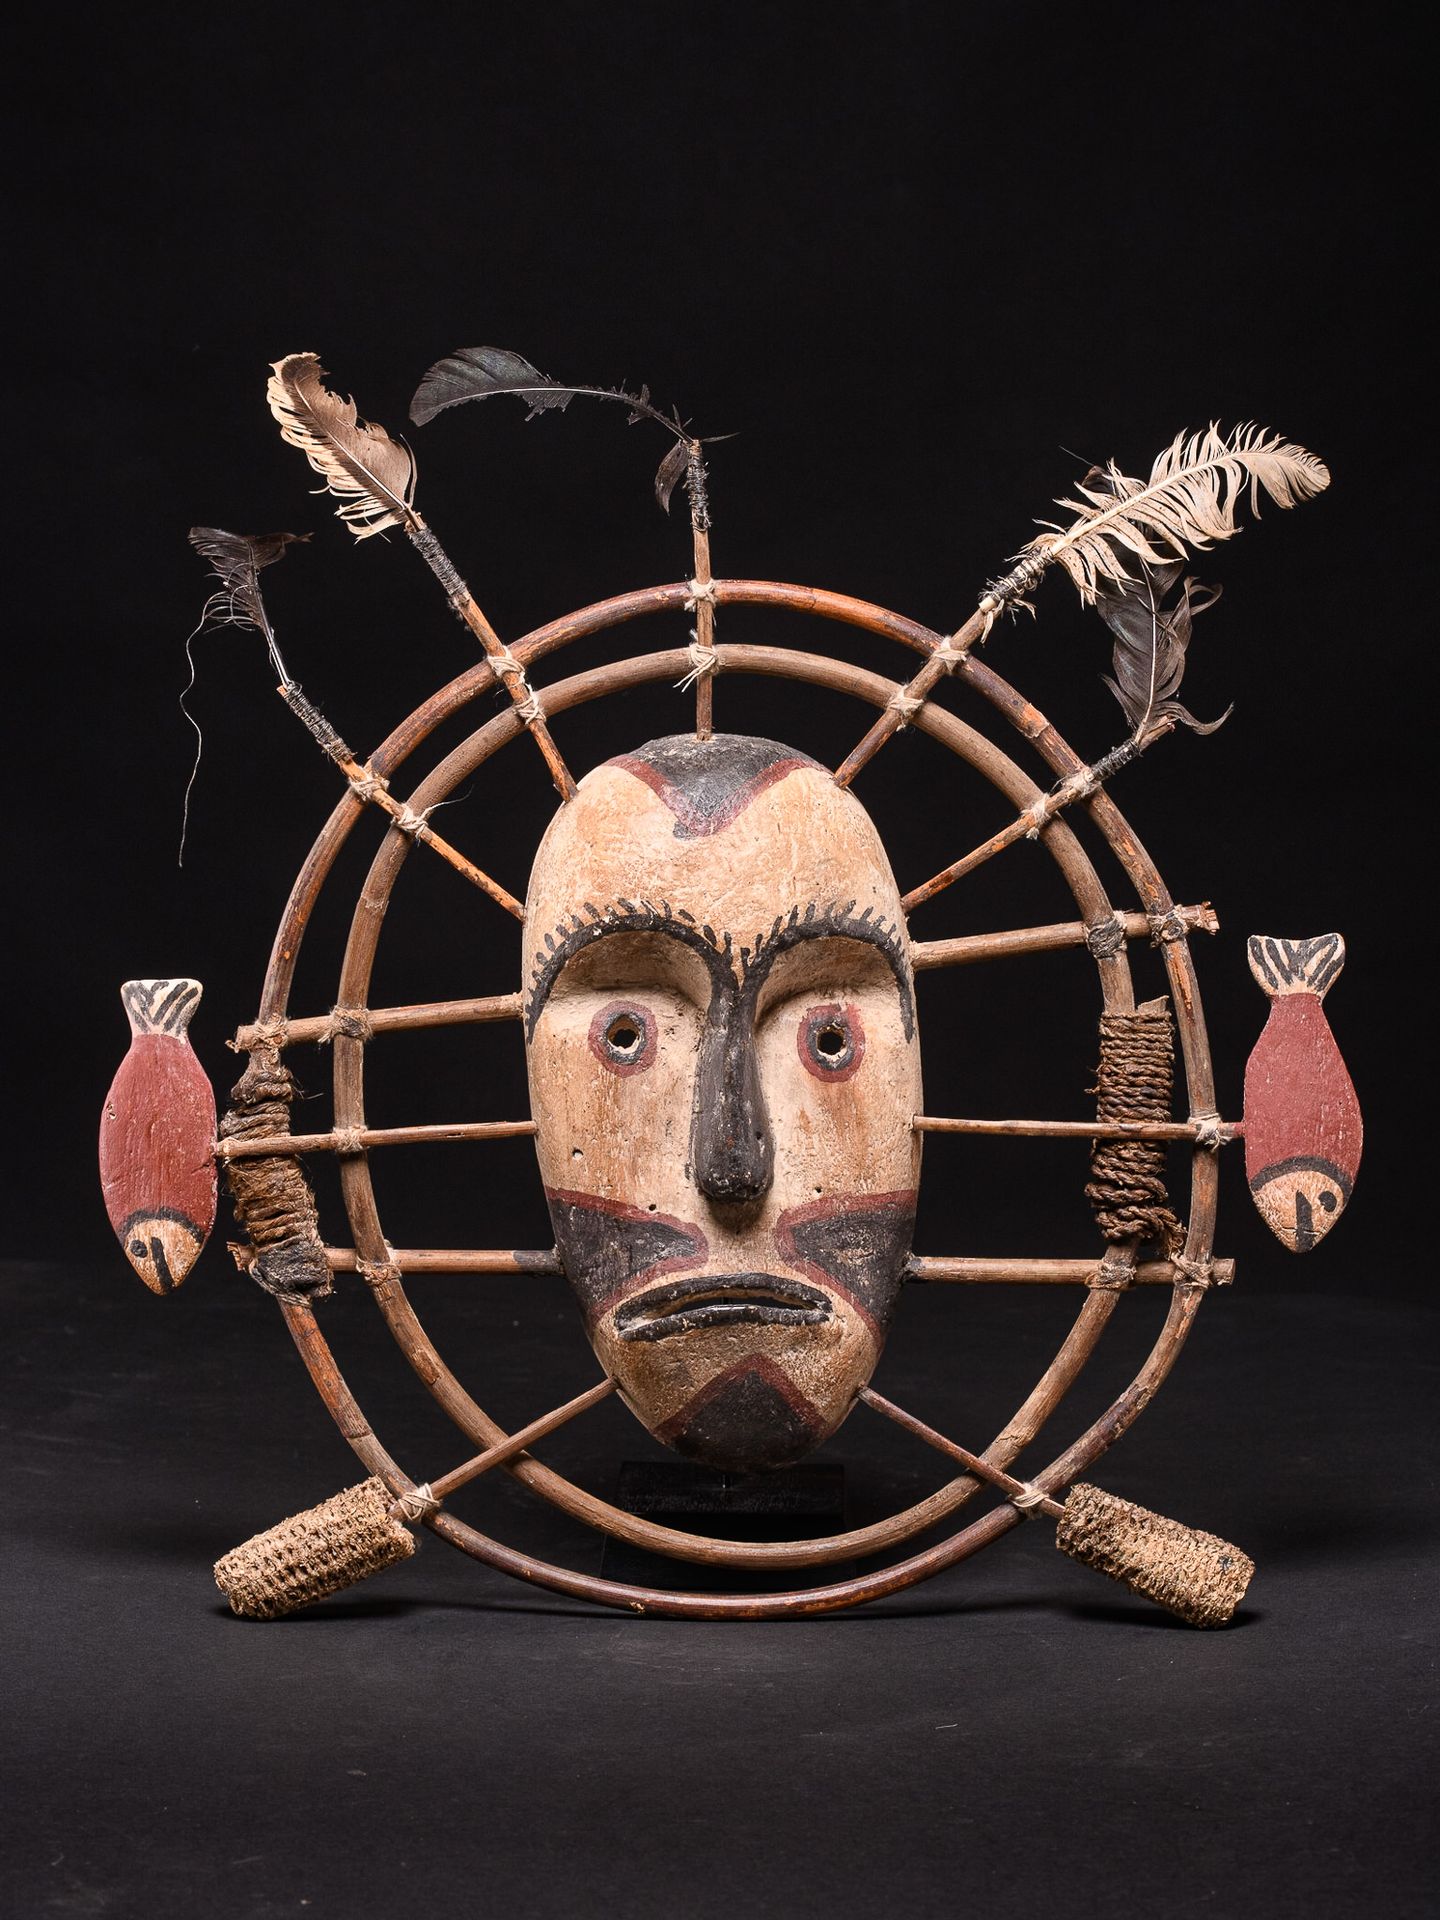 Peuple inuit Maschera inuit, piume, legno, pigmento - (Amerindian) - 35x32cm